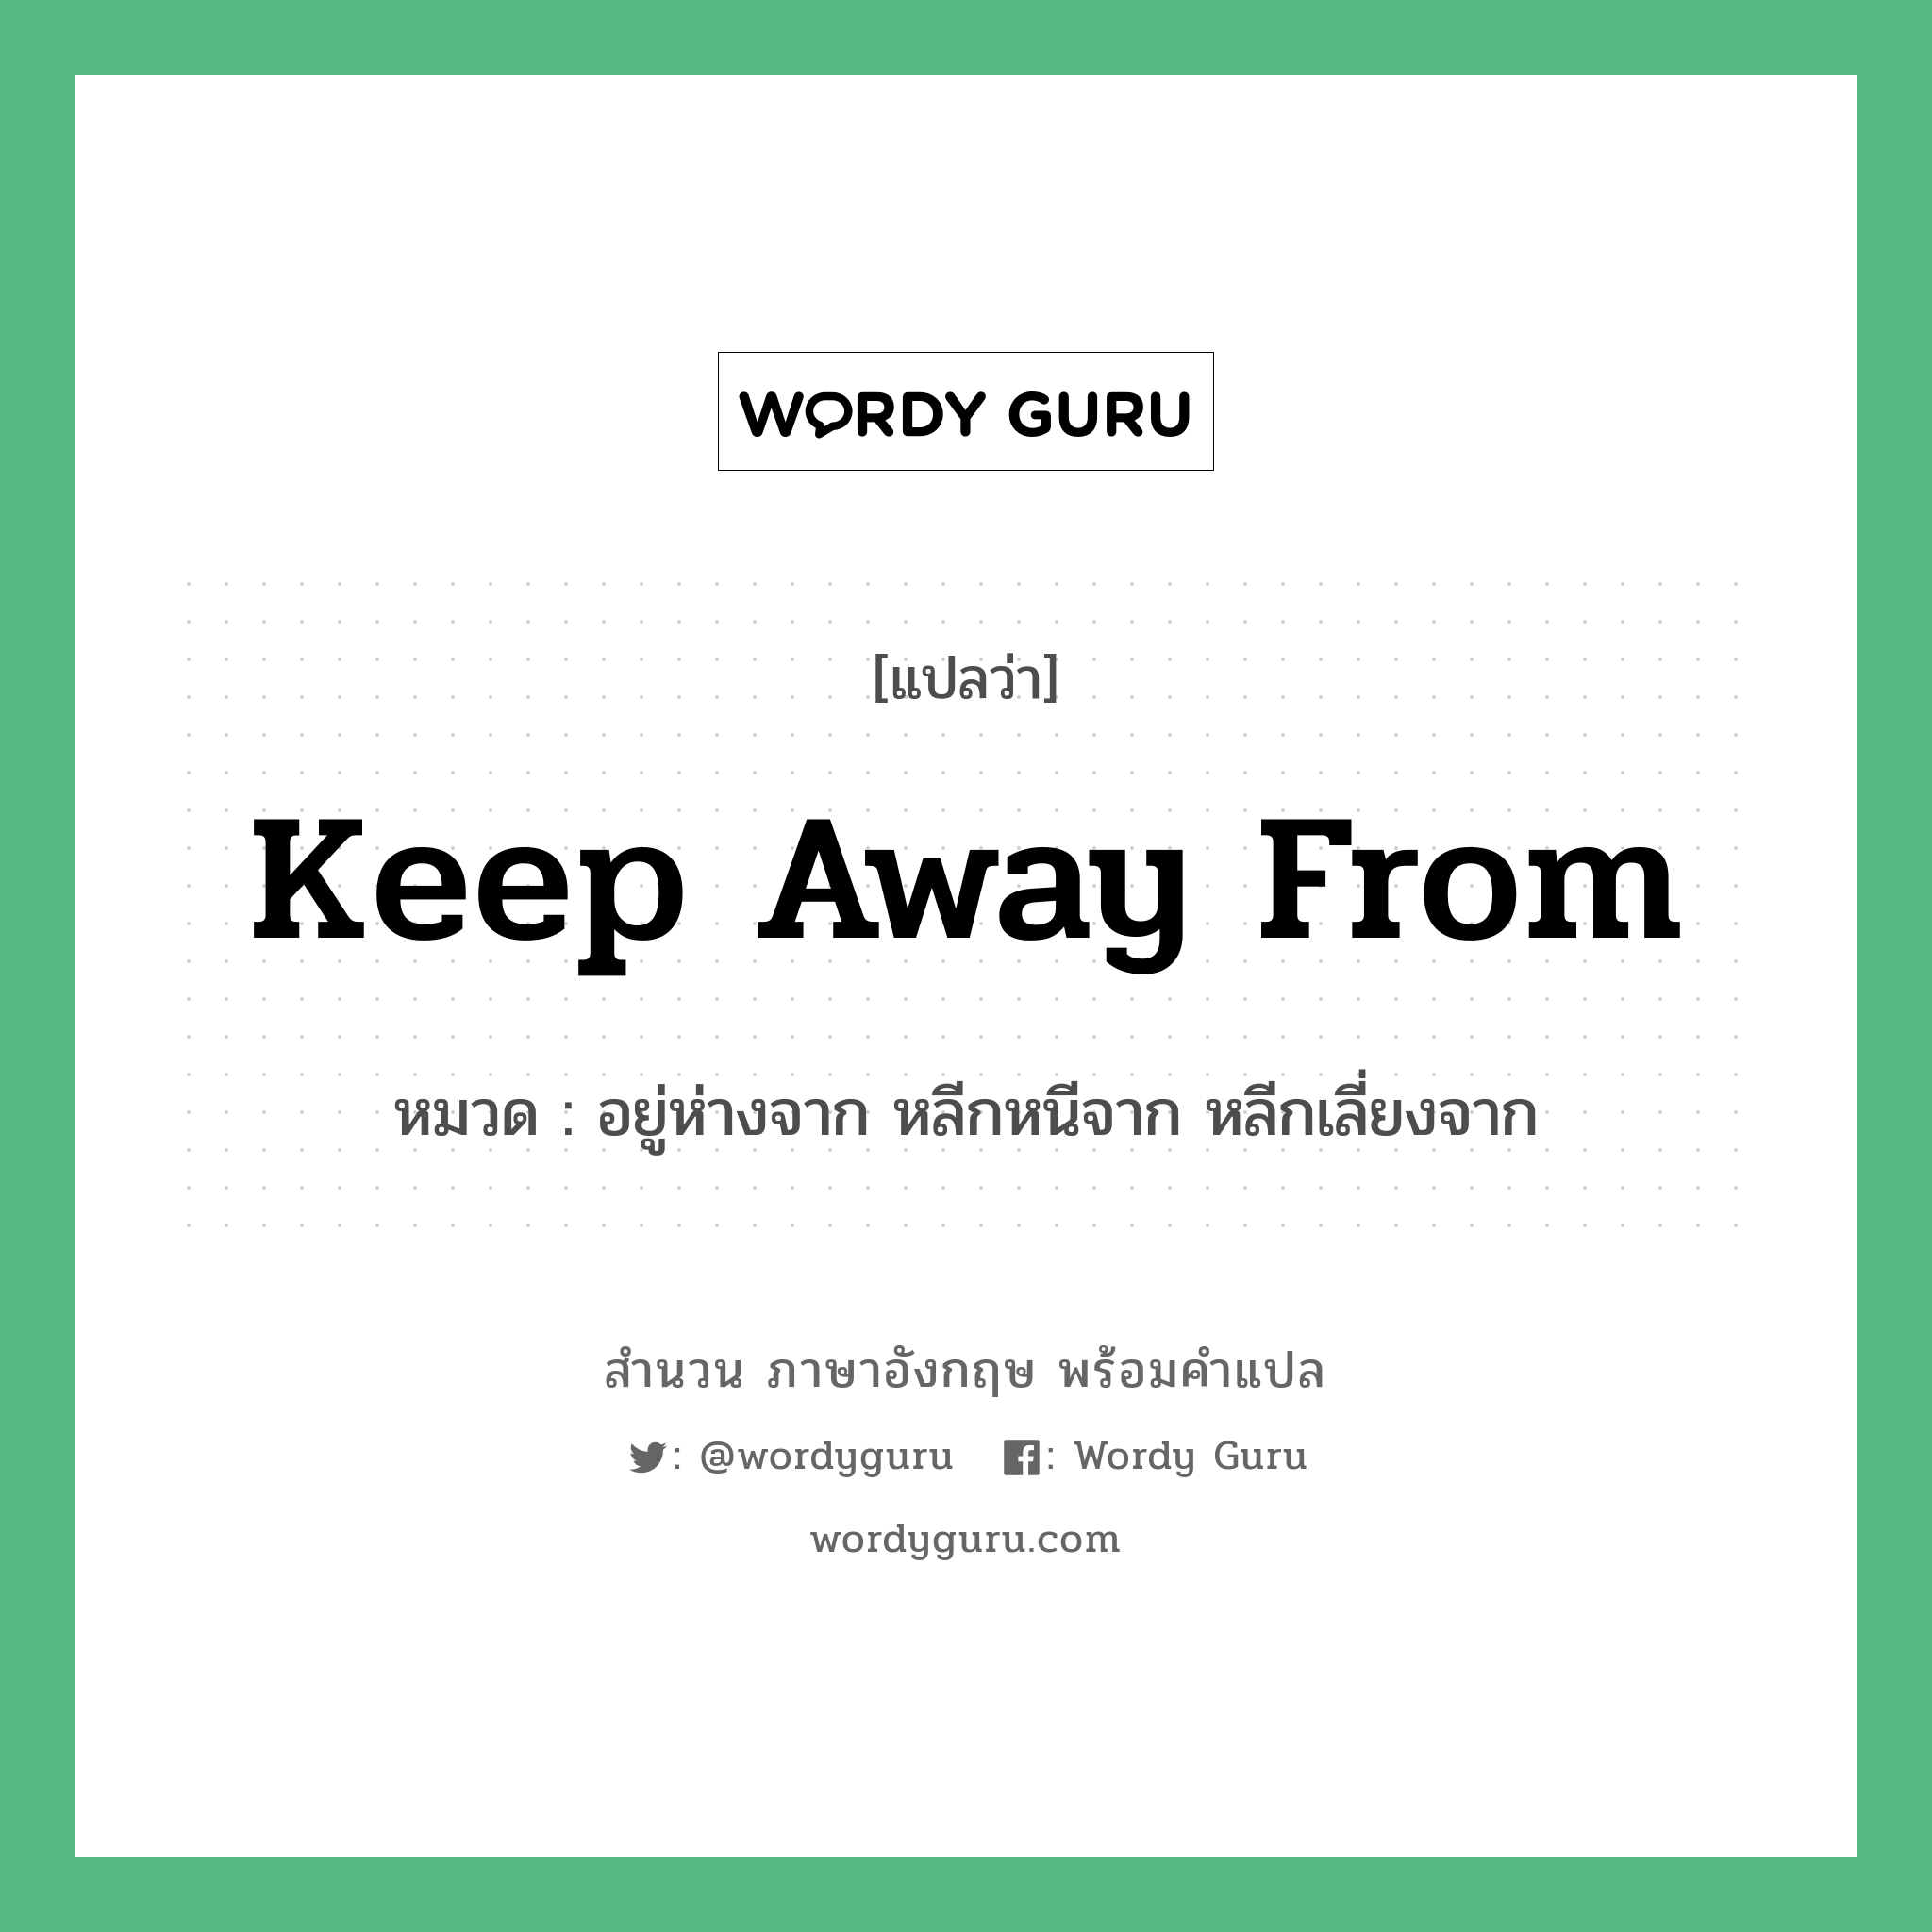 Keep away from แปลว่า?, สำนวนภาษาอังกฤษ Keep away from หมวด อยู่ห่างจาก หลีกหนีจาก หลีกเลี่ยงจาก